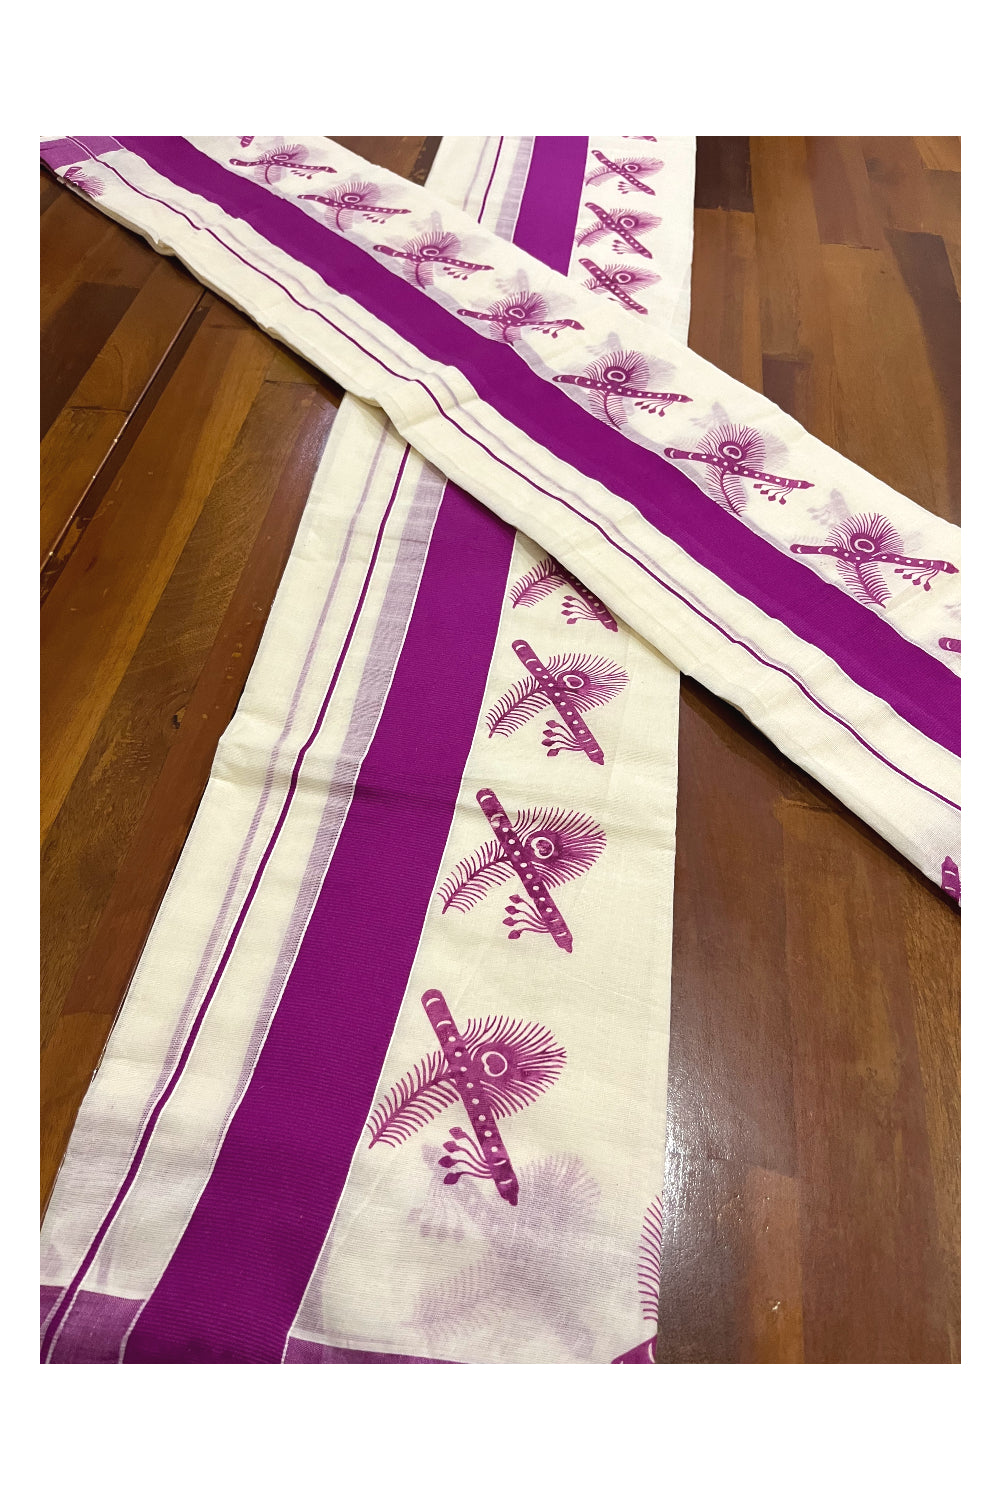 Kerala Cotton Mundum Neriyathum Single (Set Mundu) with Magenta Feather and Flute Block Prints on Border 2.80 Mtrs